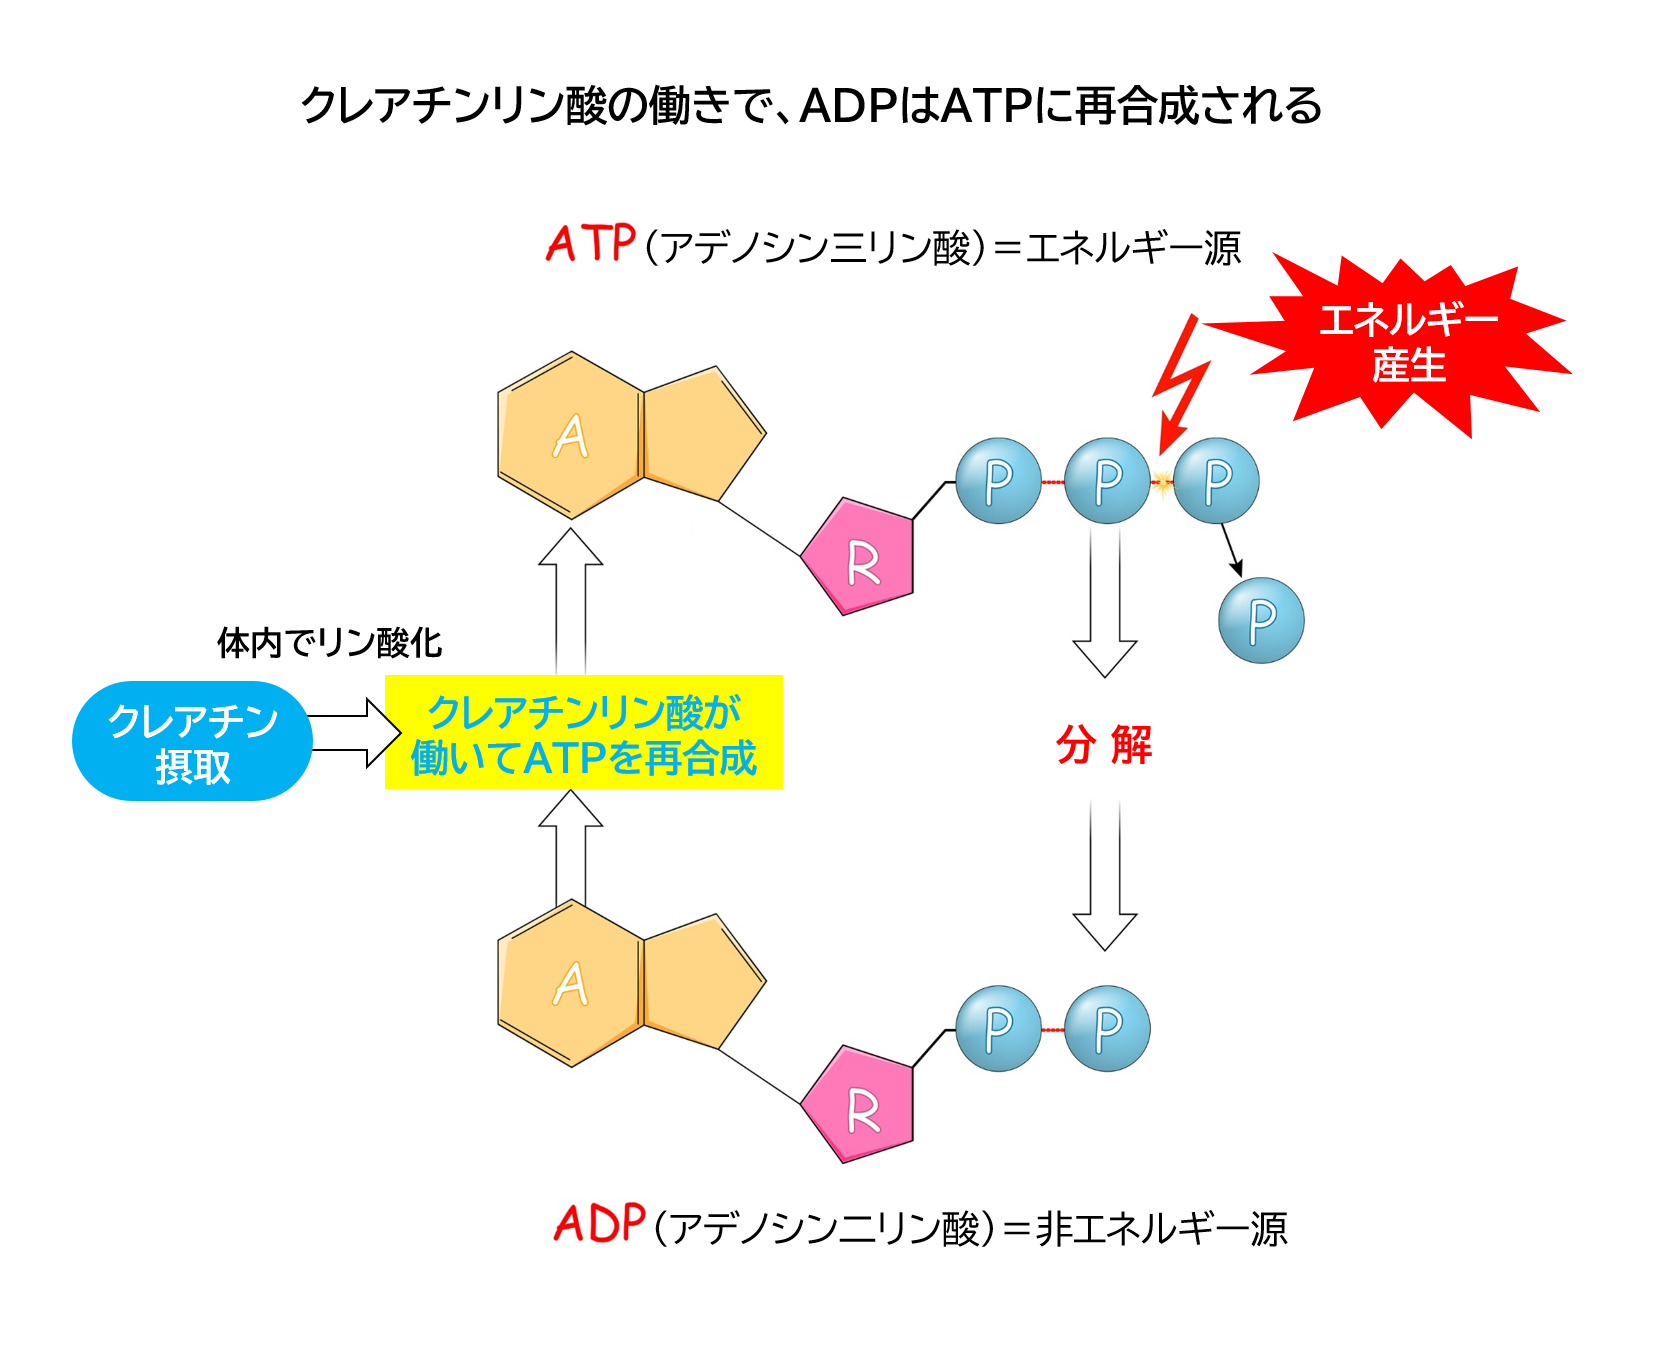 クレアチンリン酸の働きで、ADPはATPに再合成される。クレアチンの量が増えれば、筋肉の強い力をより長い時間維持することが可能。